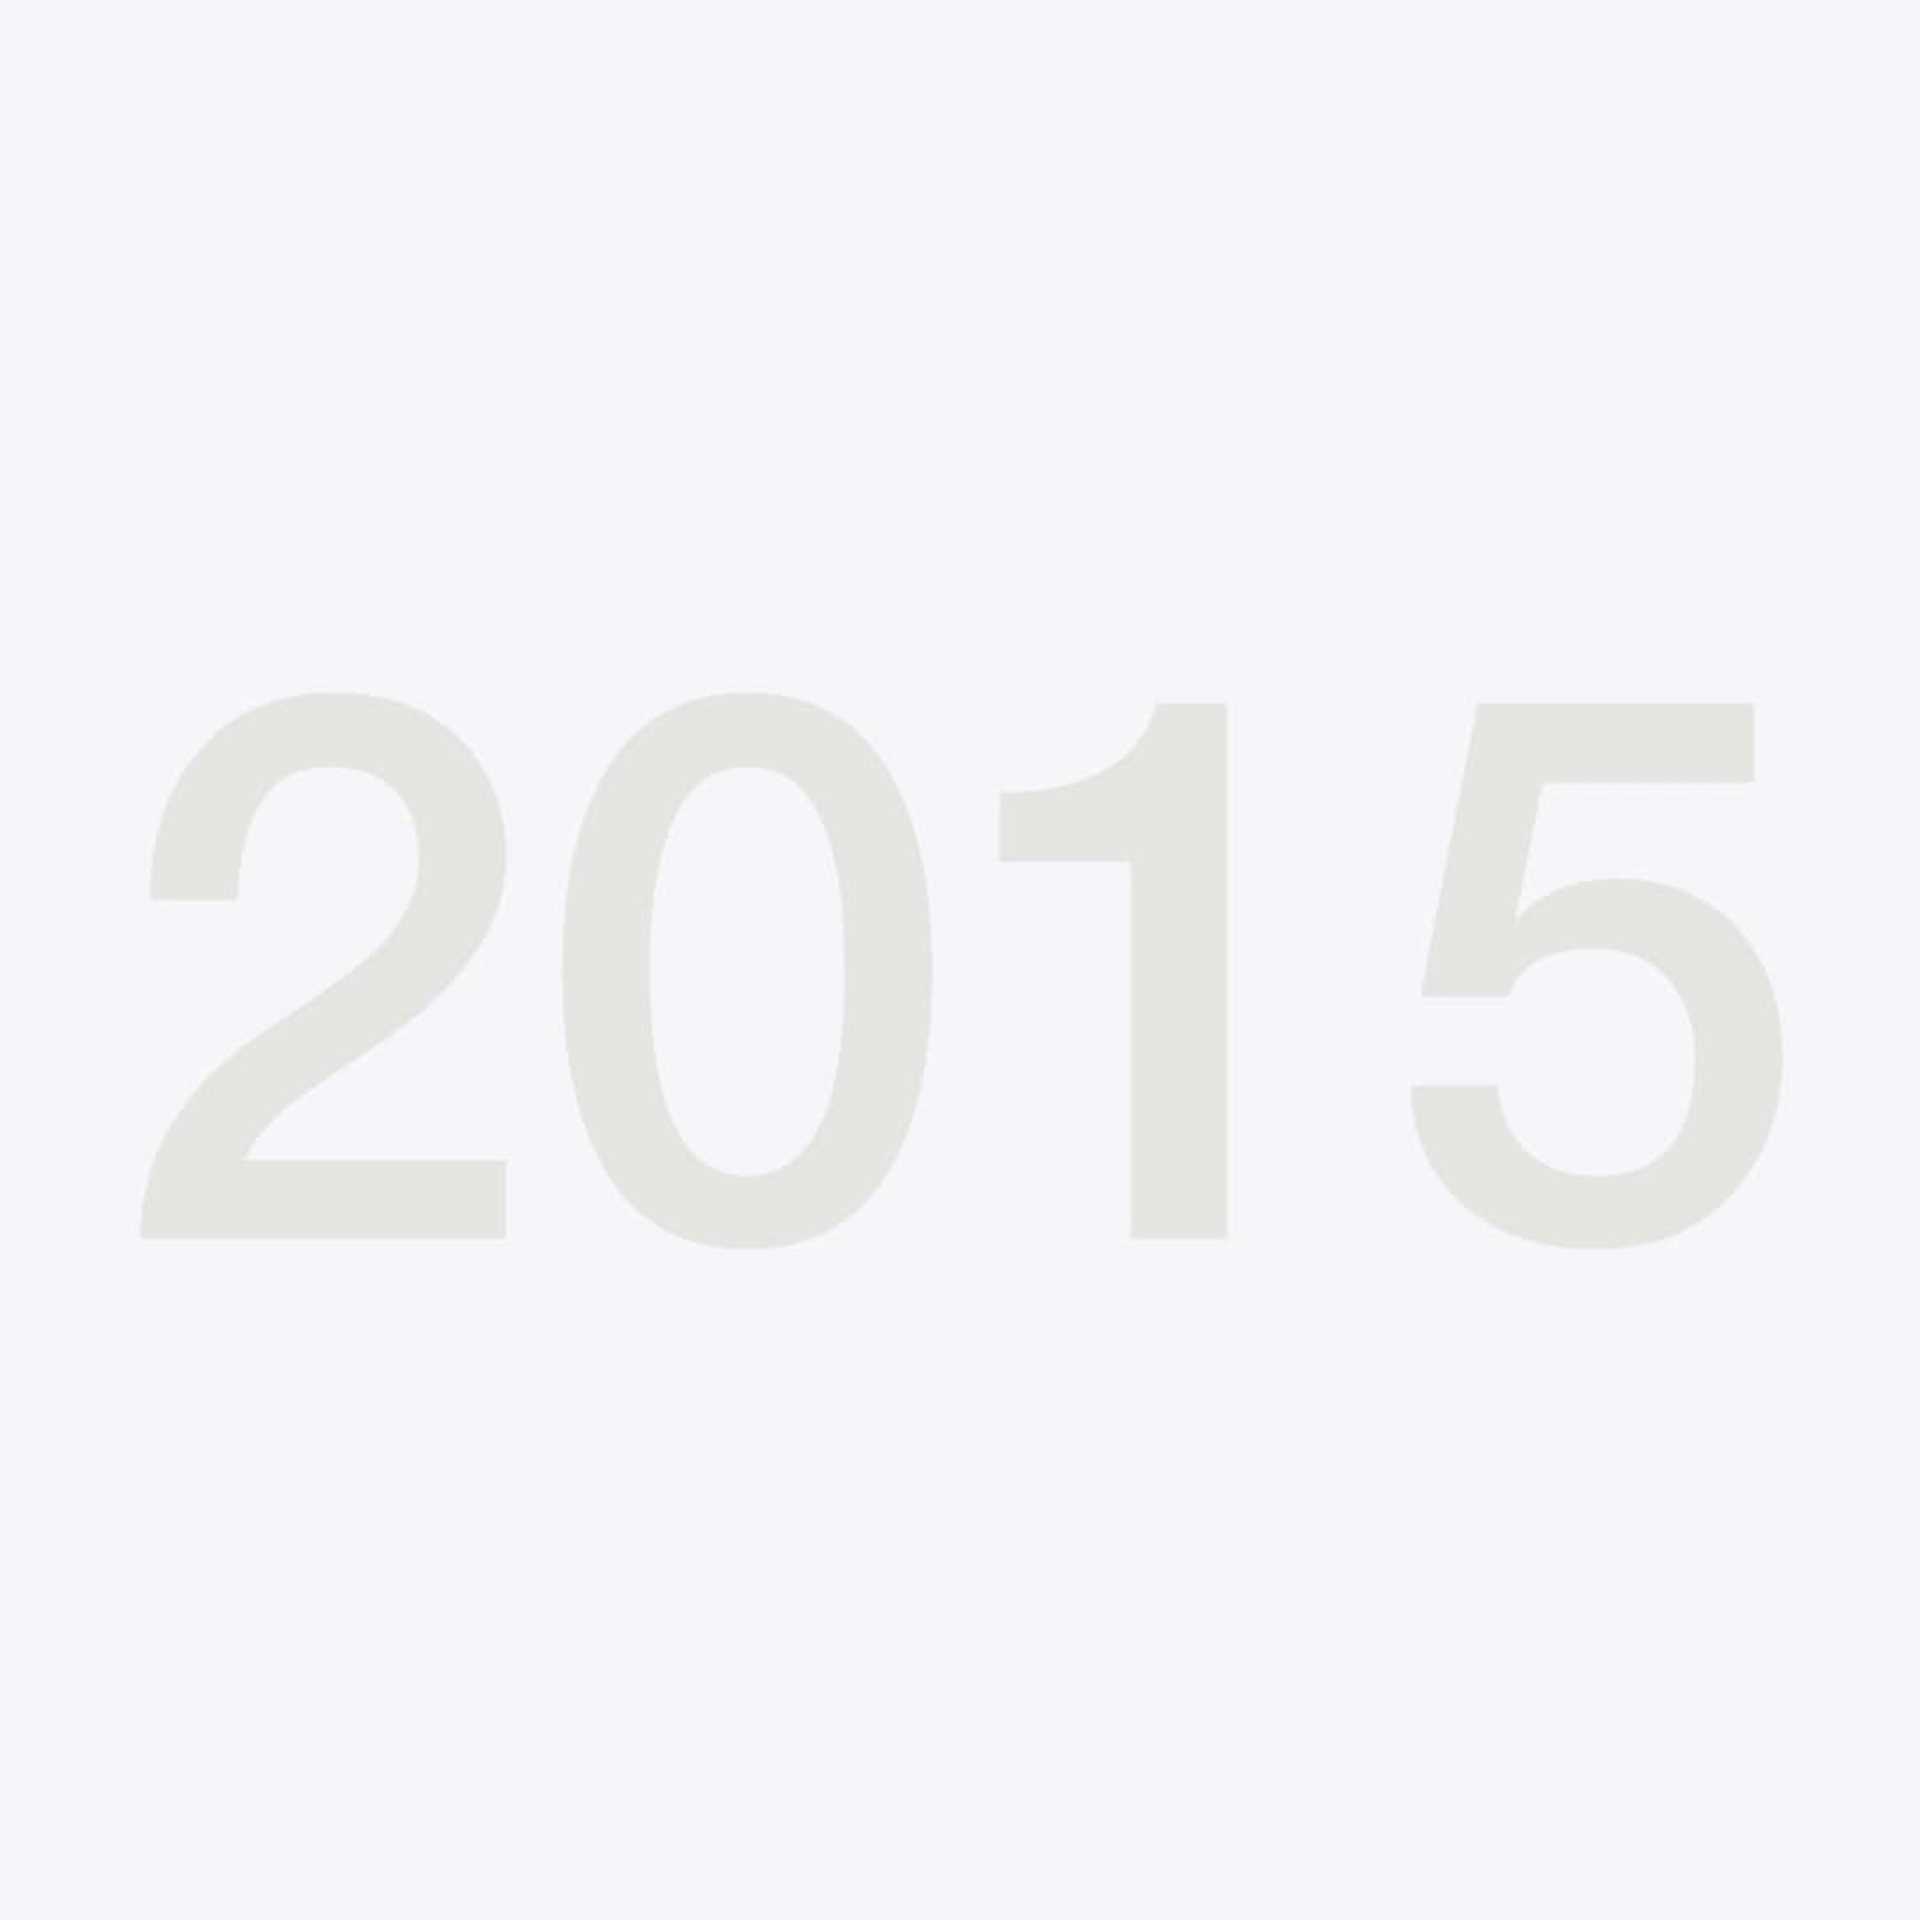 Grafik Jahreszahl 2015